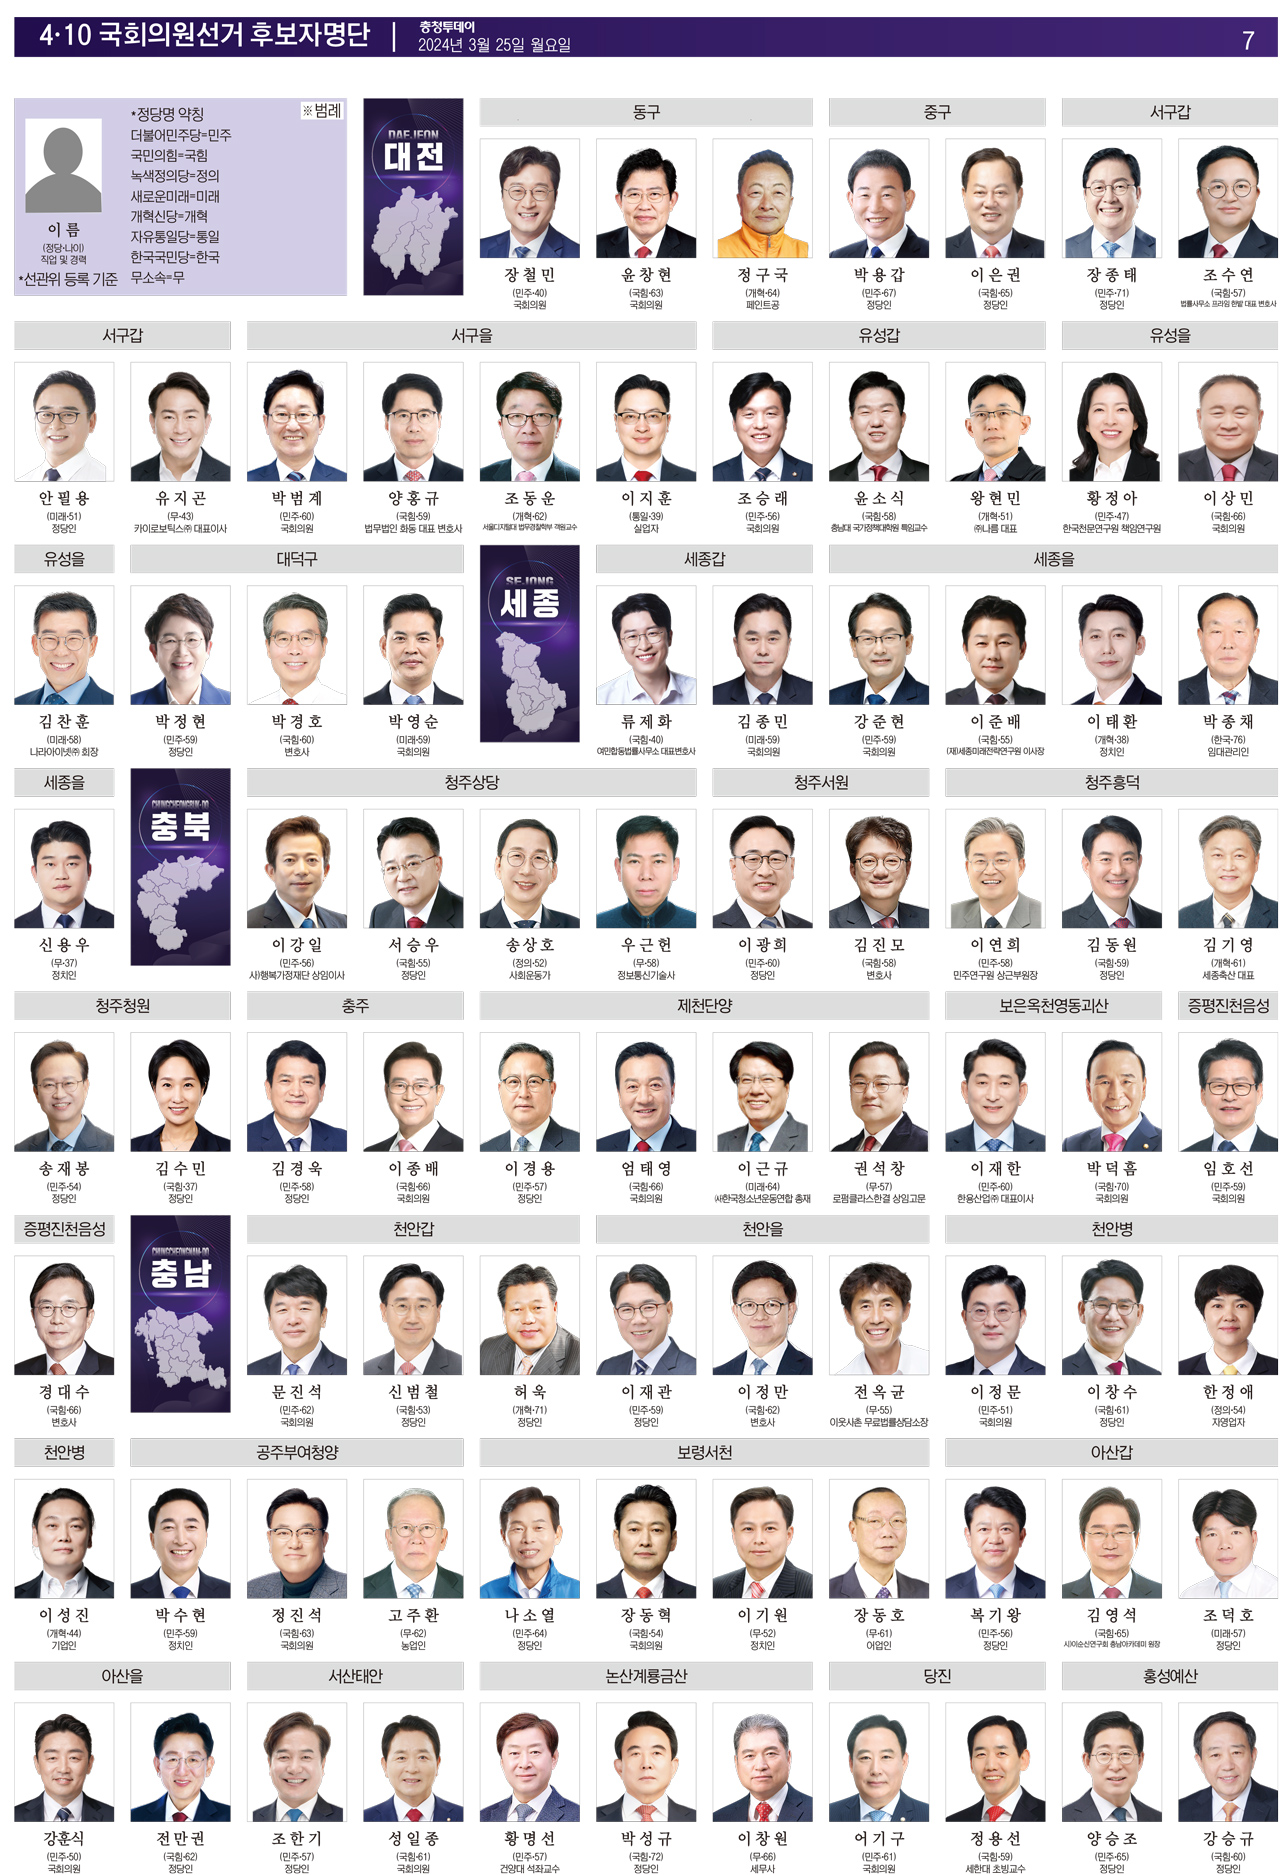 제22대 국회의원선거 후보자 등록현황. 충청투데이 제작